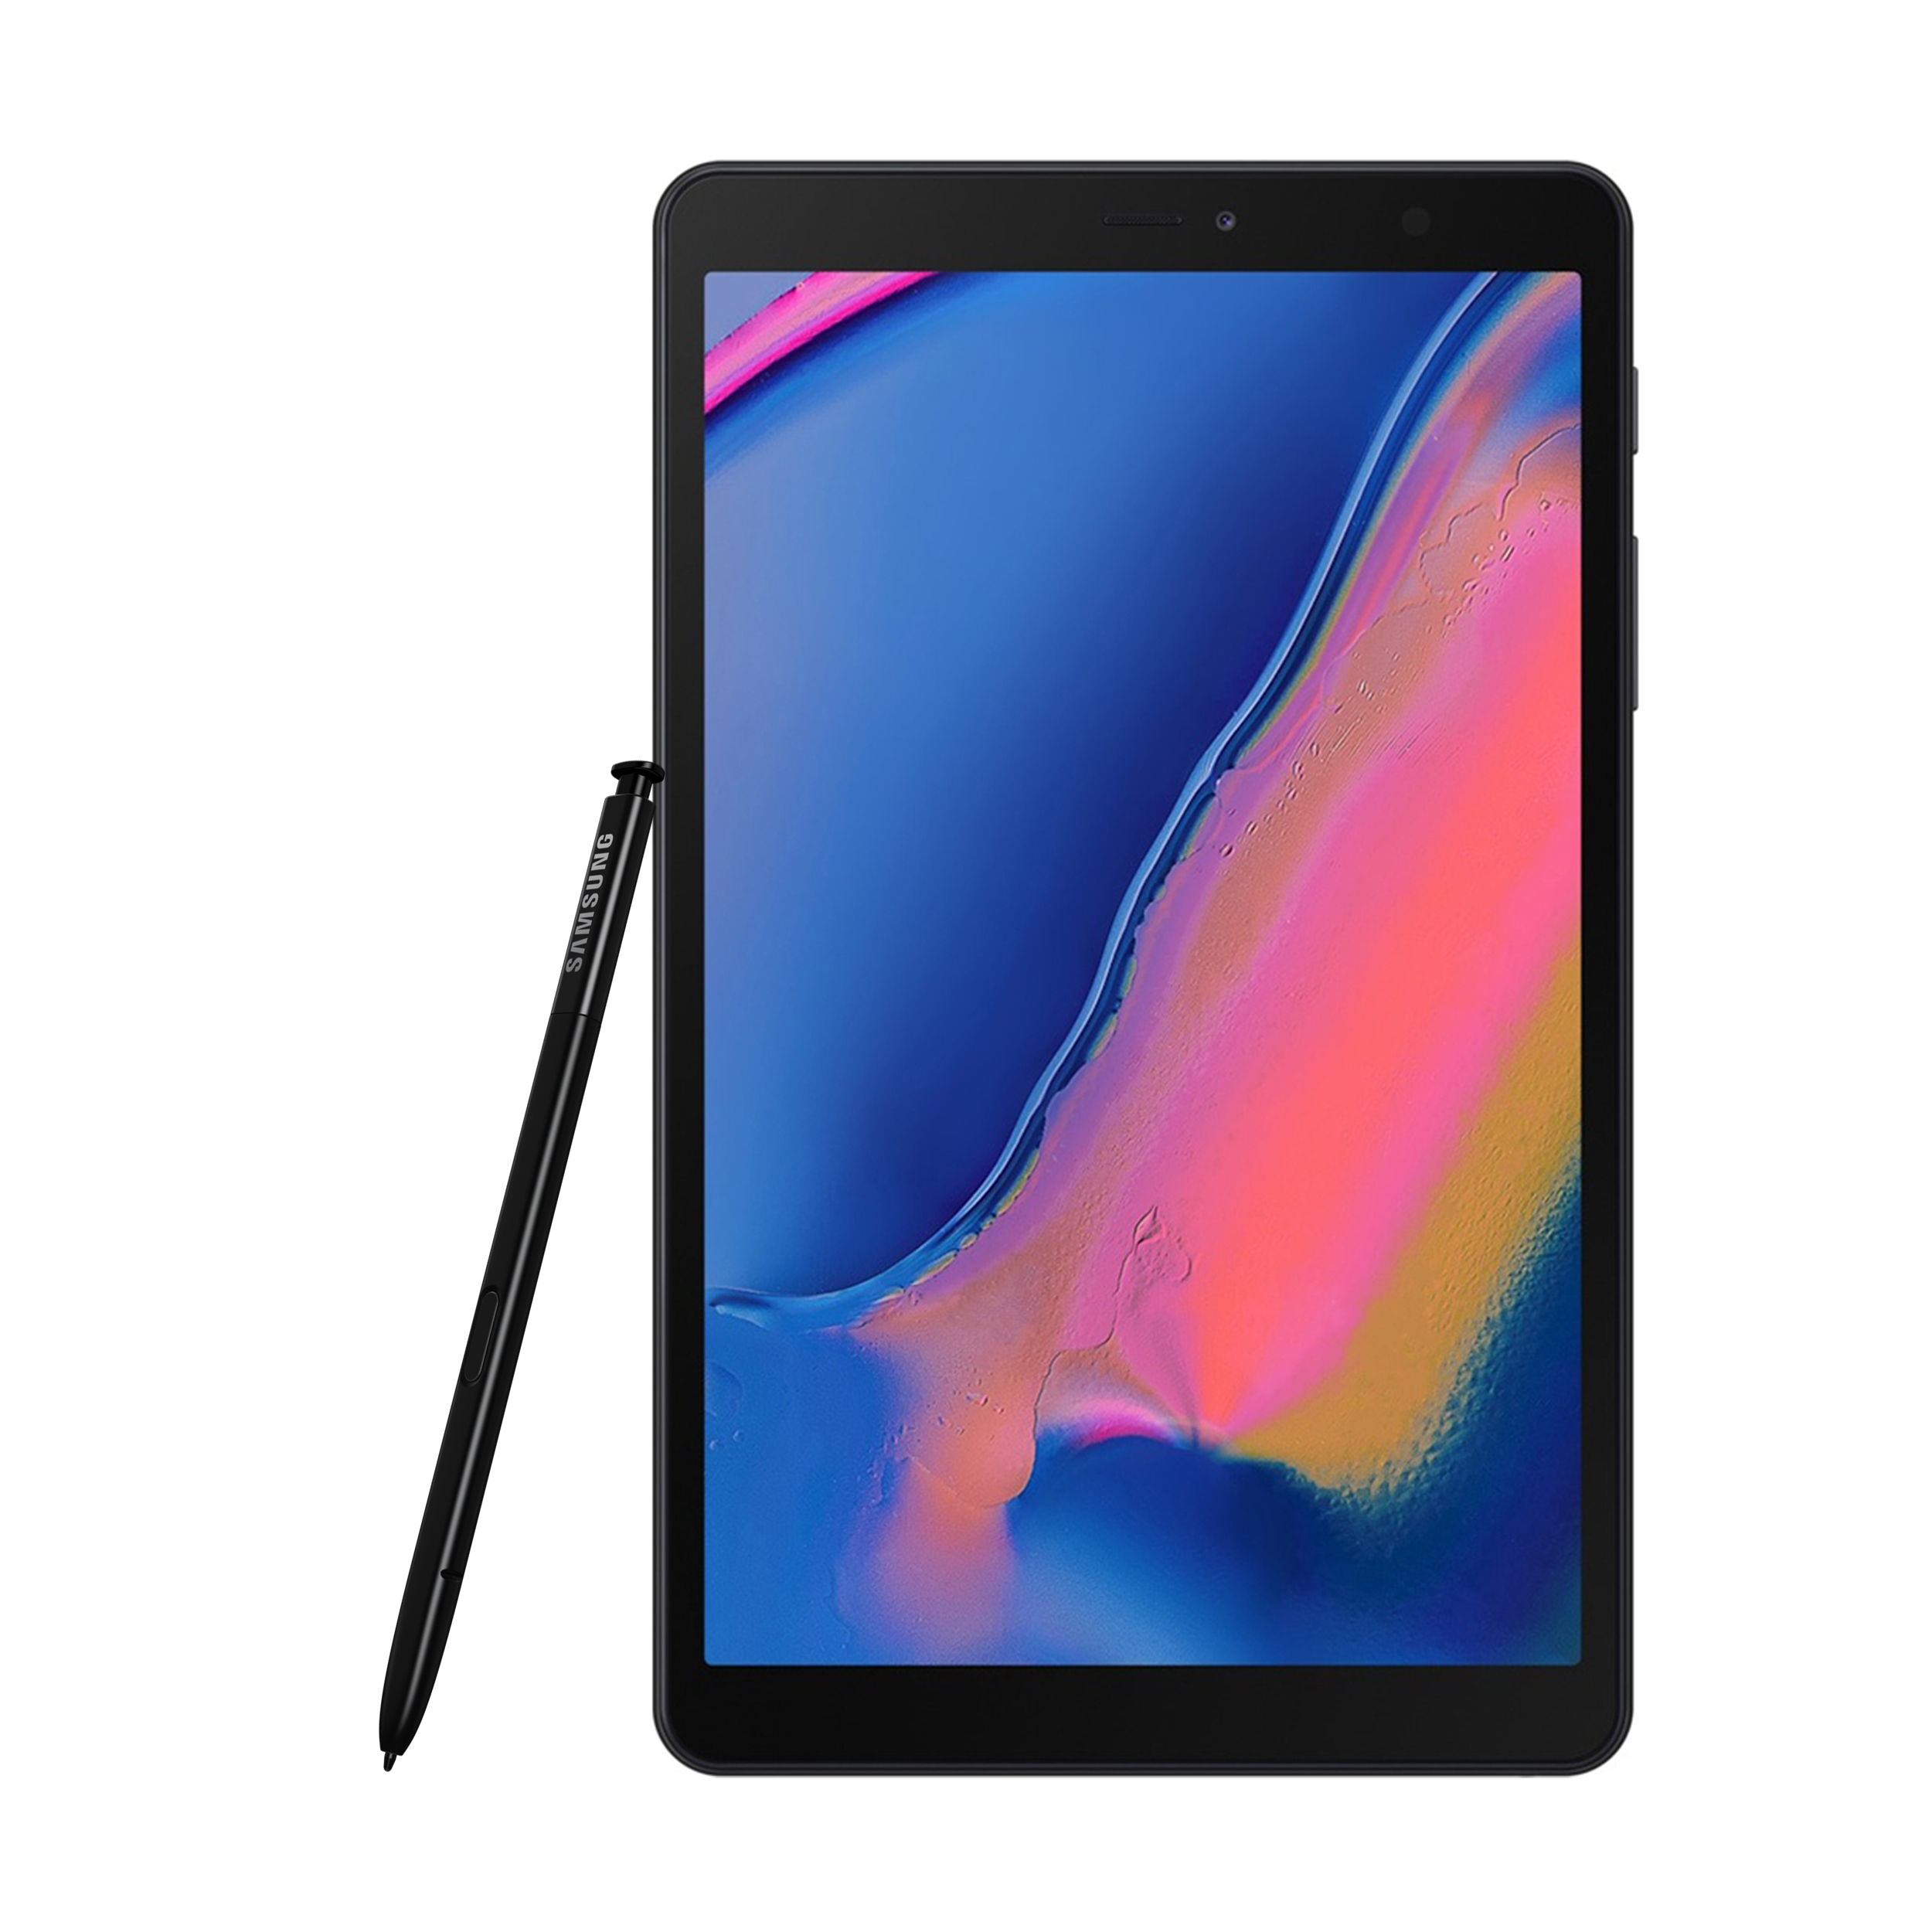 فروش نقدي و اقساطی تبلت سامسونگ مدل Galaxy Tab A 8.0 2019 LTE SM-P205 به همراه قلم S Pen ظرفیت 32 گیگابایت